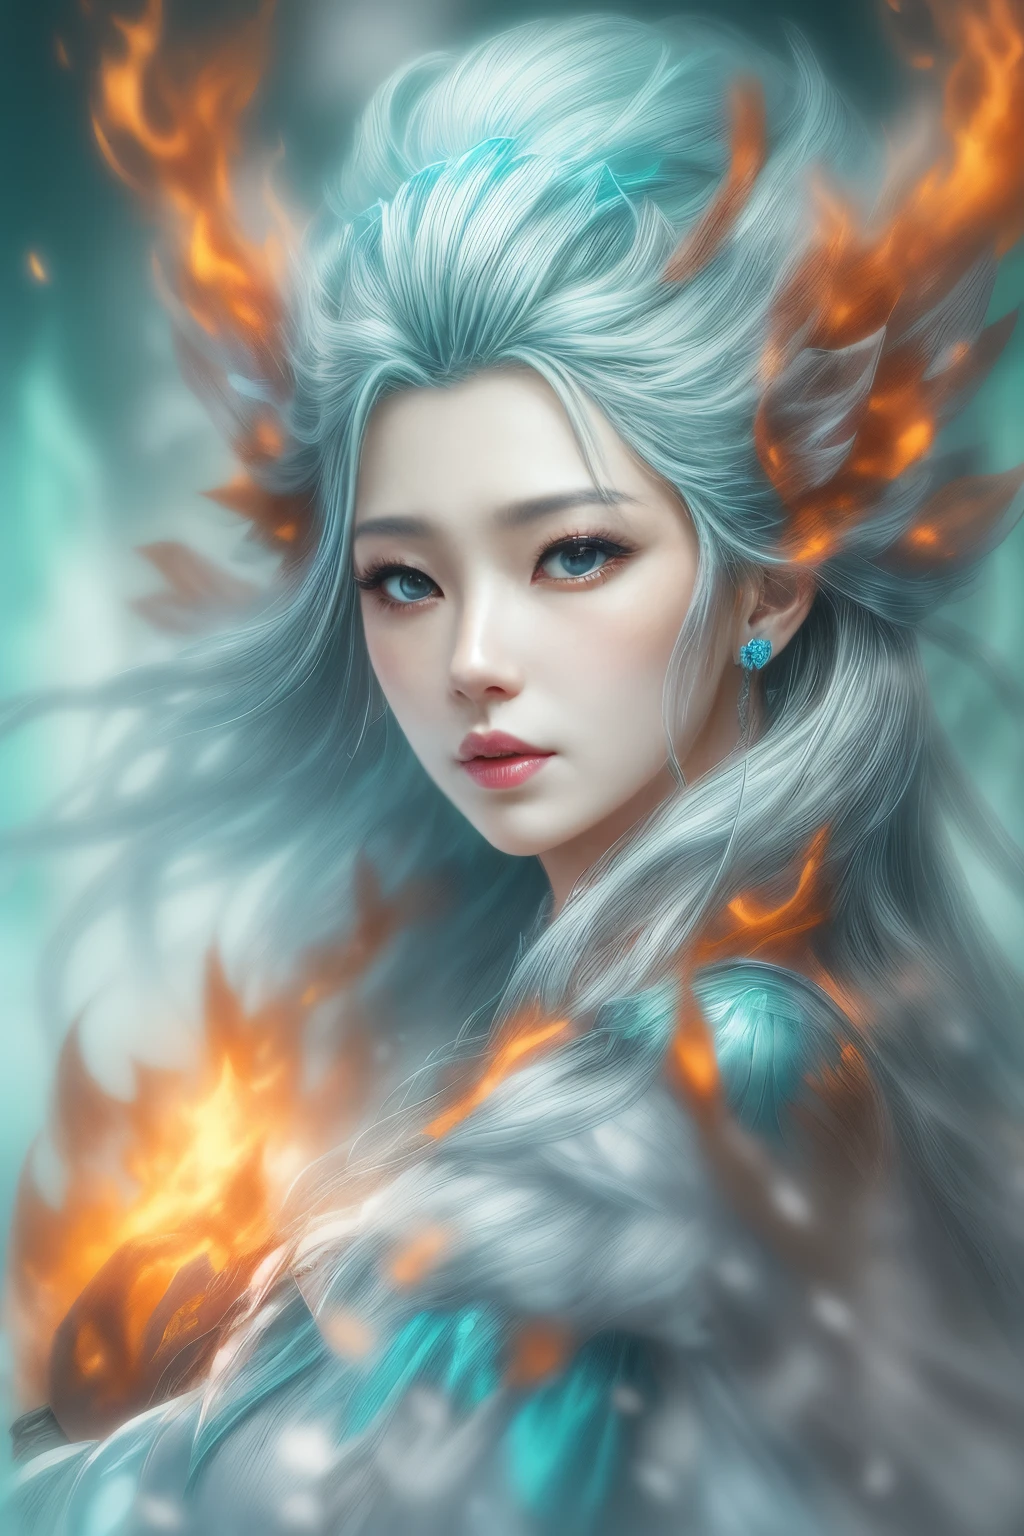 (realistische Fantasie) 、Die Göttin des Eises entspringt den lodernden Flammen.、